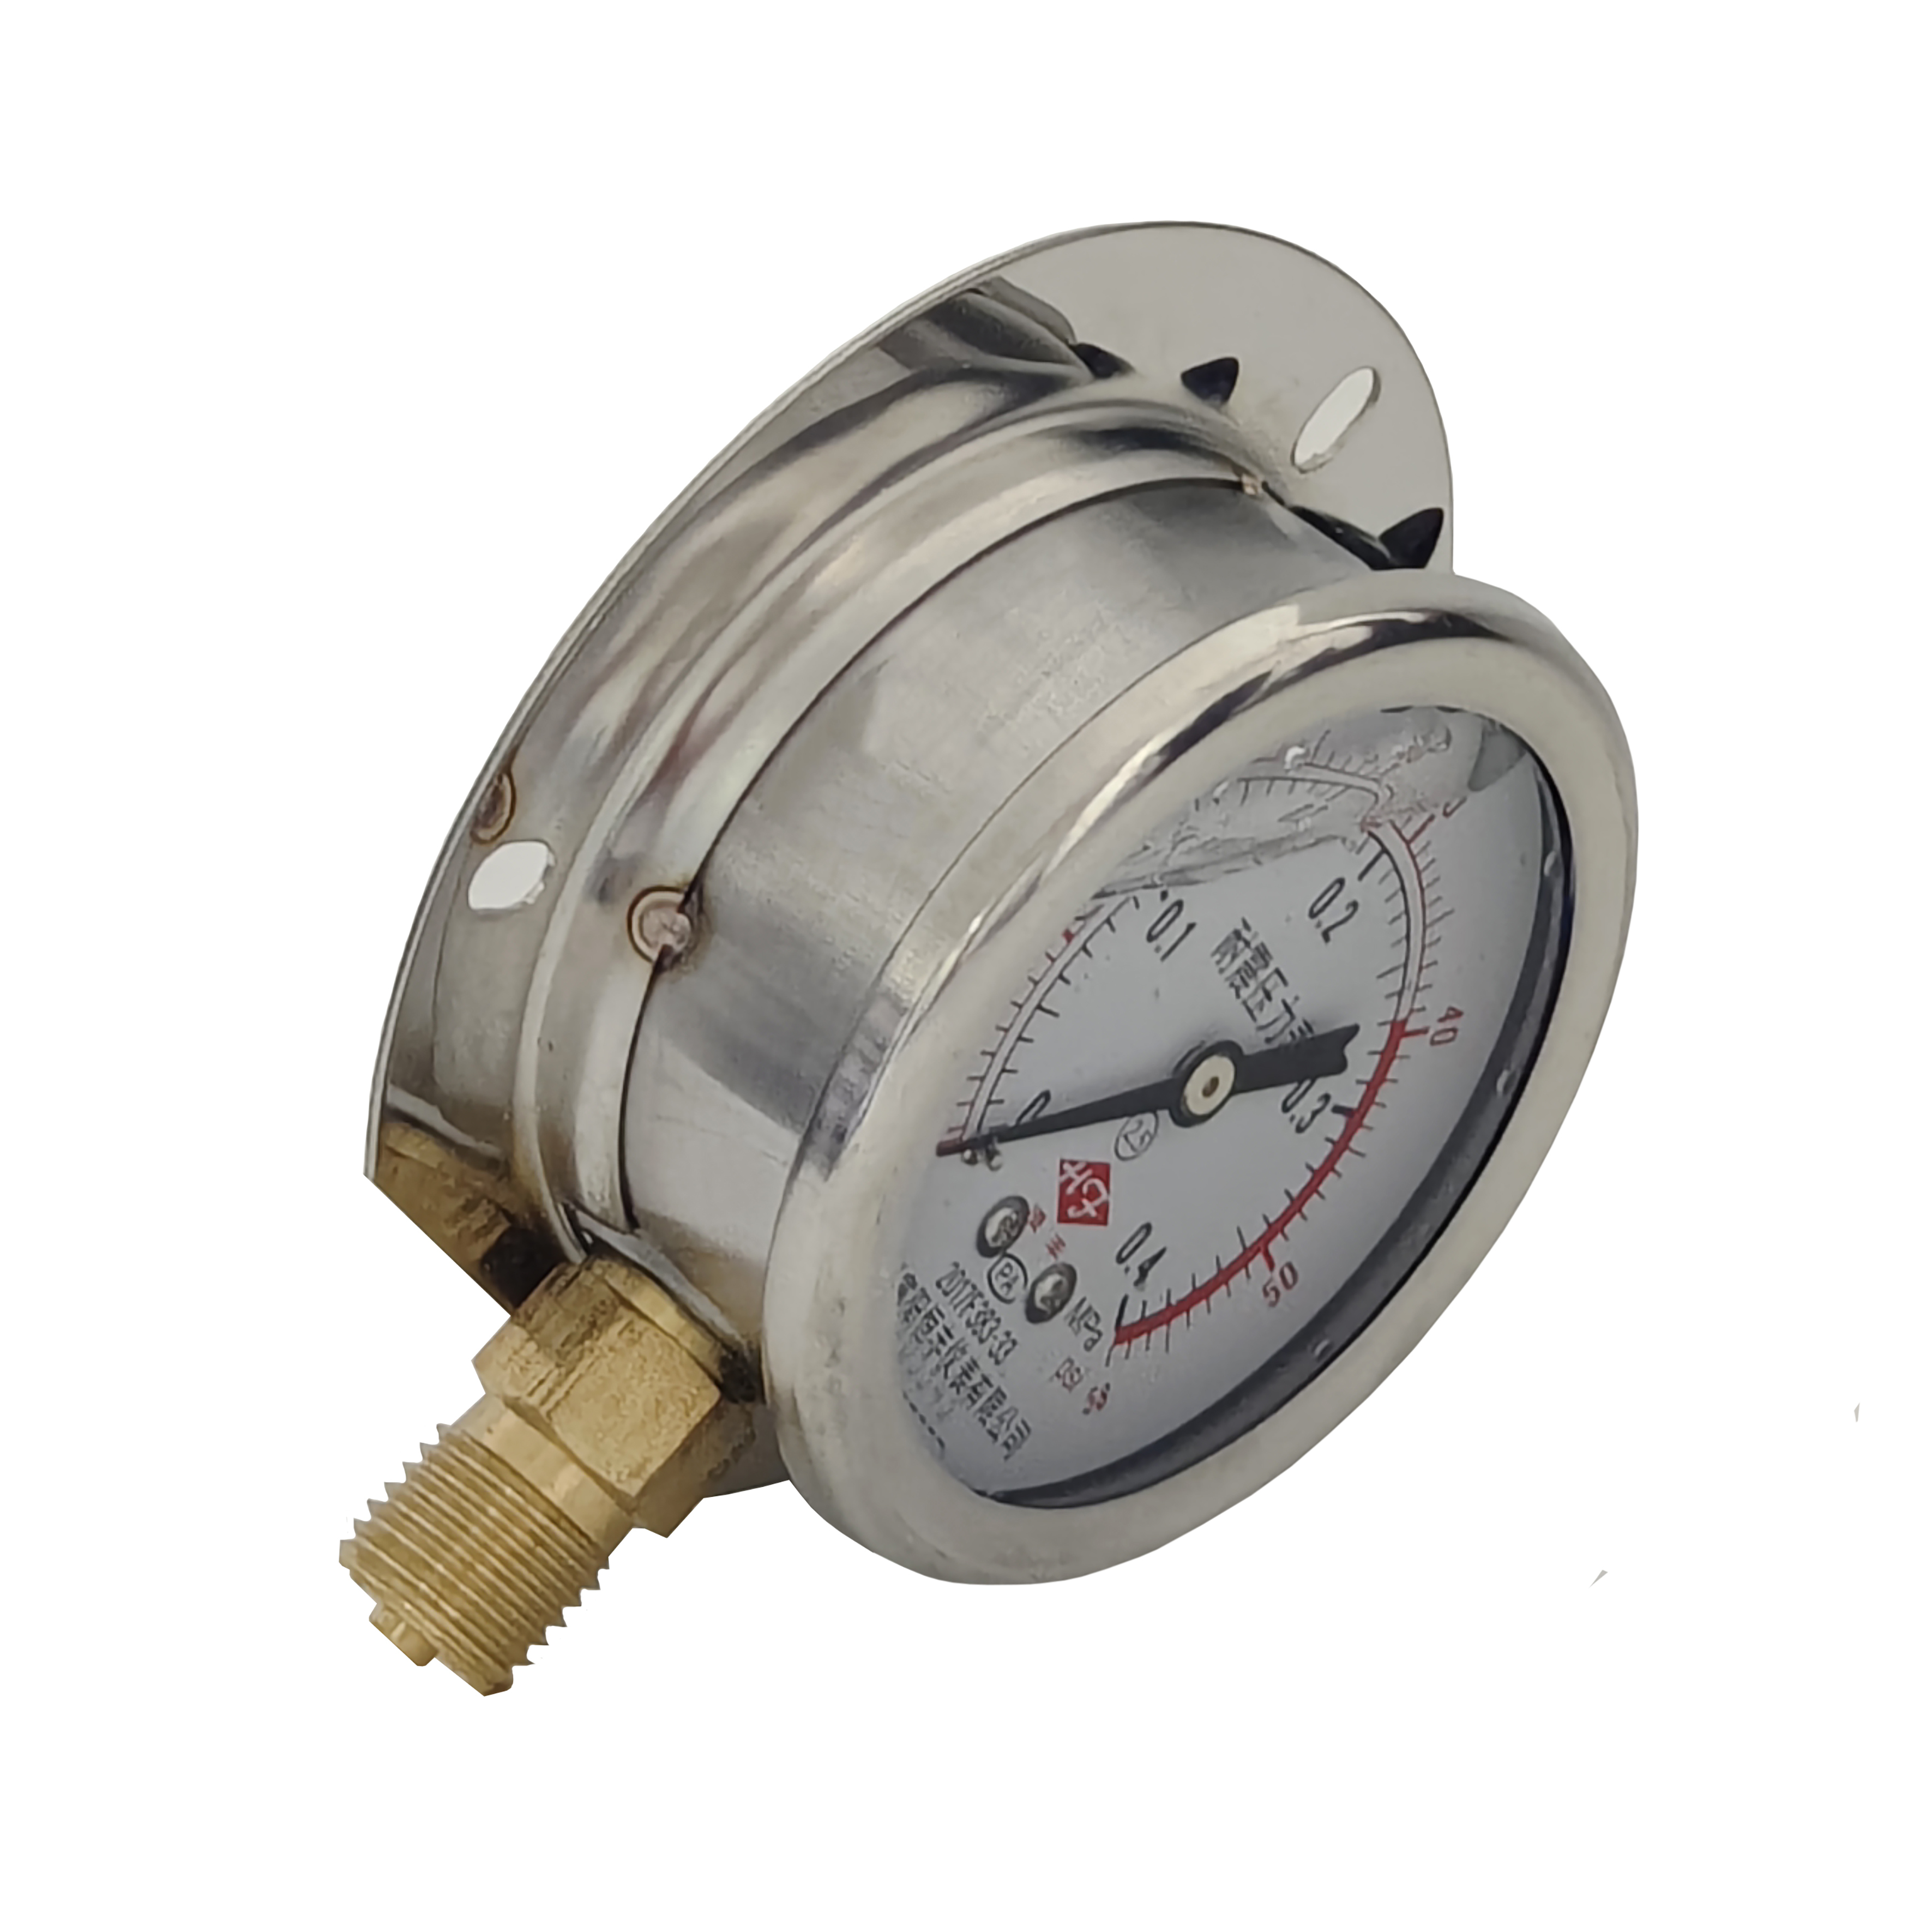 YN60 (T) shockproof pressure gauge